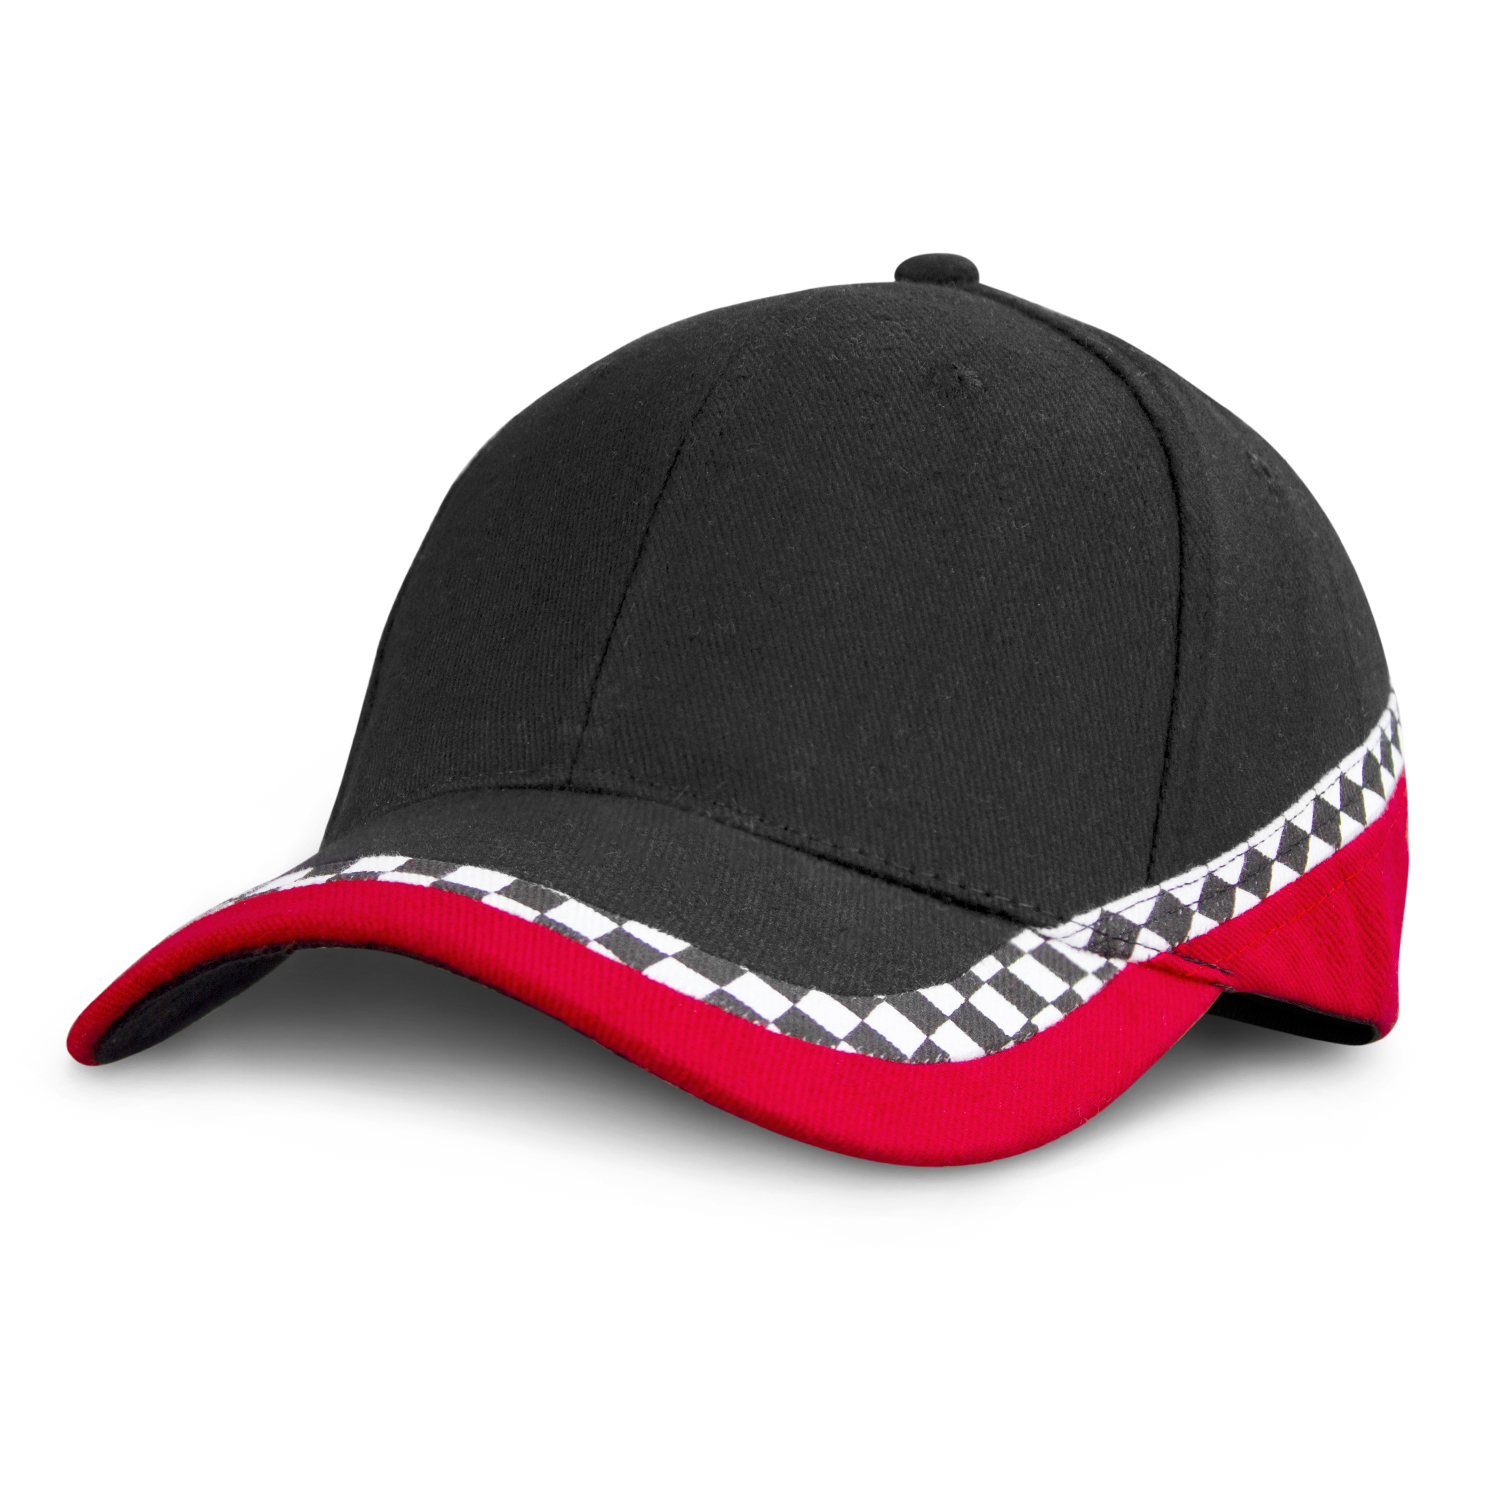 Headwear Express Circuit Cap cap